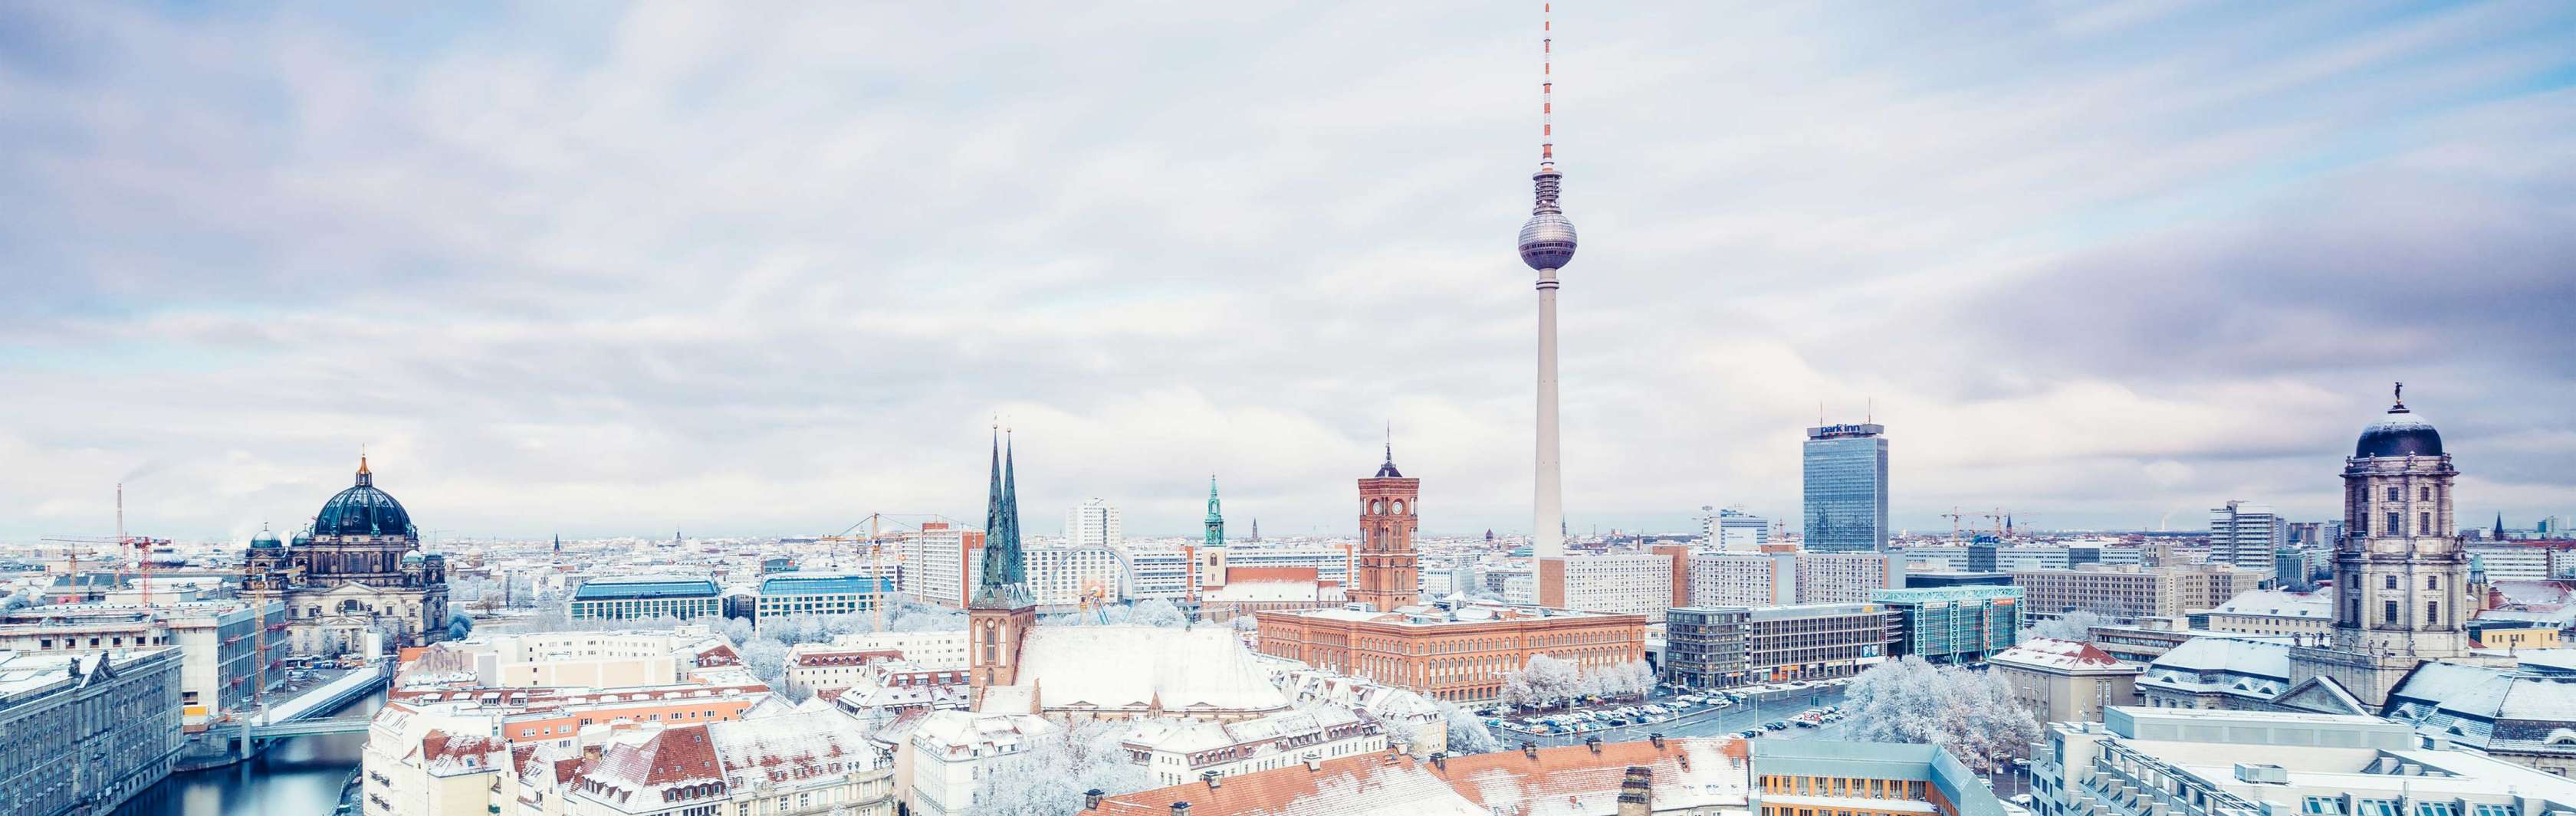 Blick auf die berliner Innenstadt im Winter